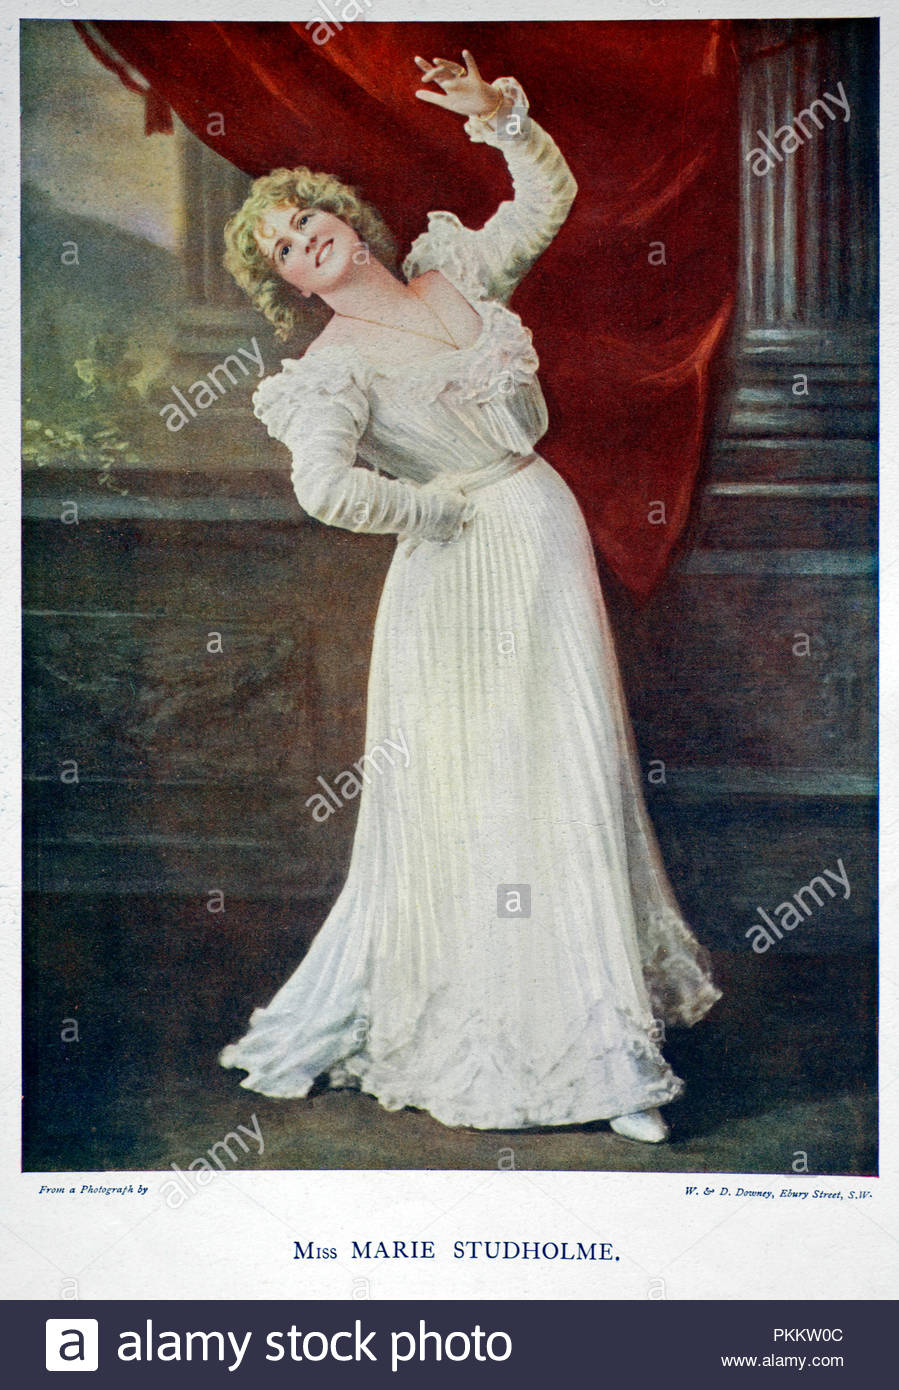 Marie Studholme portrait, 1872 - 1930, était une actrice et chanteuse connue pour son soutien et parfois des rôles principaux dans la comédie musicale de l'époque victorienne et édouardienne, illustration couleur à partir de 1899. Banque D'Images